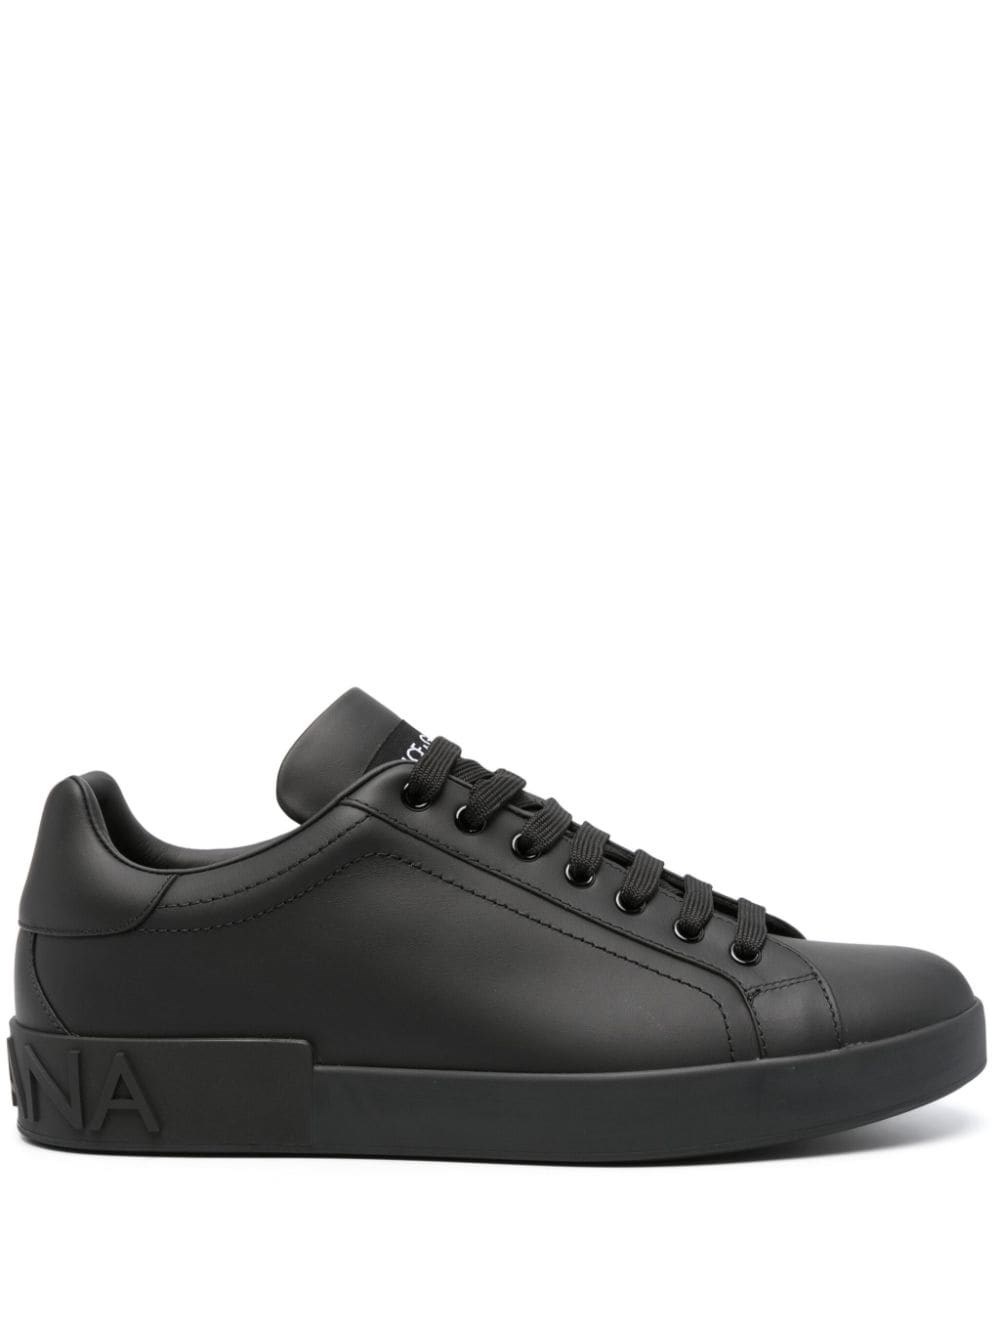 Dolce & Gabbana Sneakers Portofino In Black